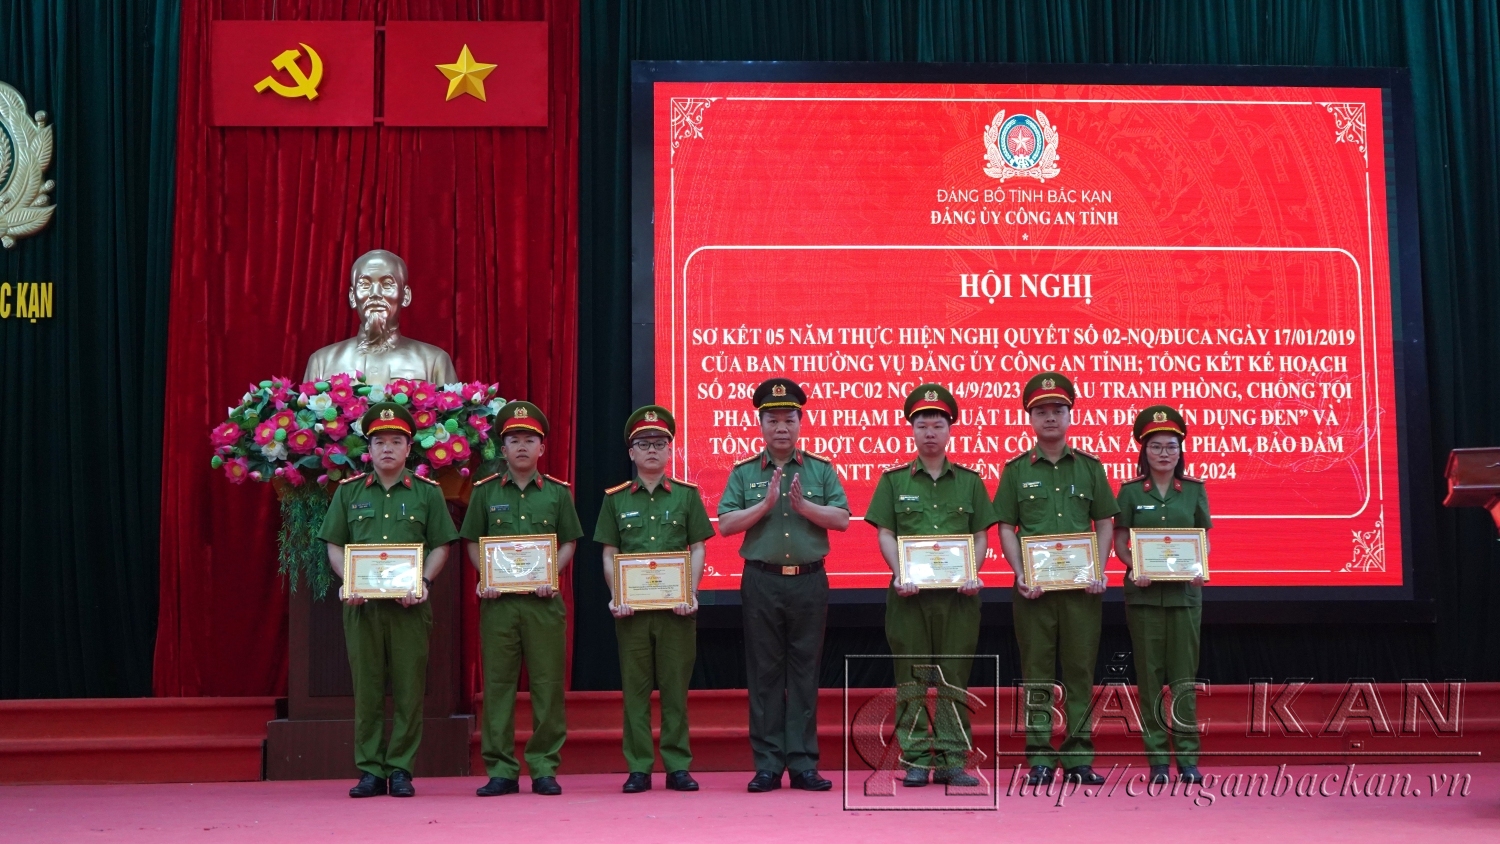 Ảnh 8 Đại tá Hà Văn Tuyên, Giám đốc Công an tỉnh trao giấy khen cho các tập thể có thành tích trong đợt hiện cao điểm tấn công, trấn áp tội phạm, vi phạm pháp luật liên quan đến hoạt động tín dụng đen trên địa